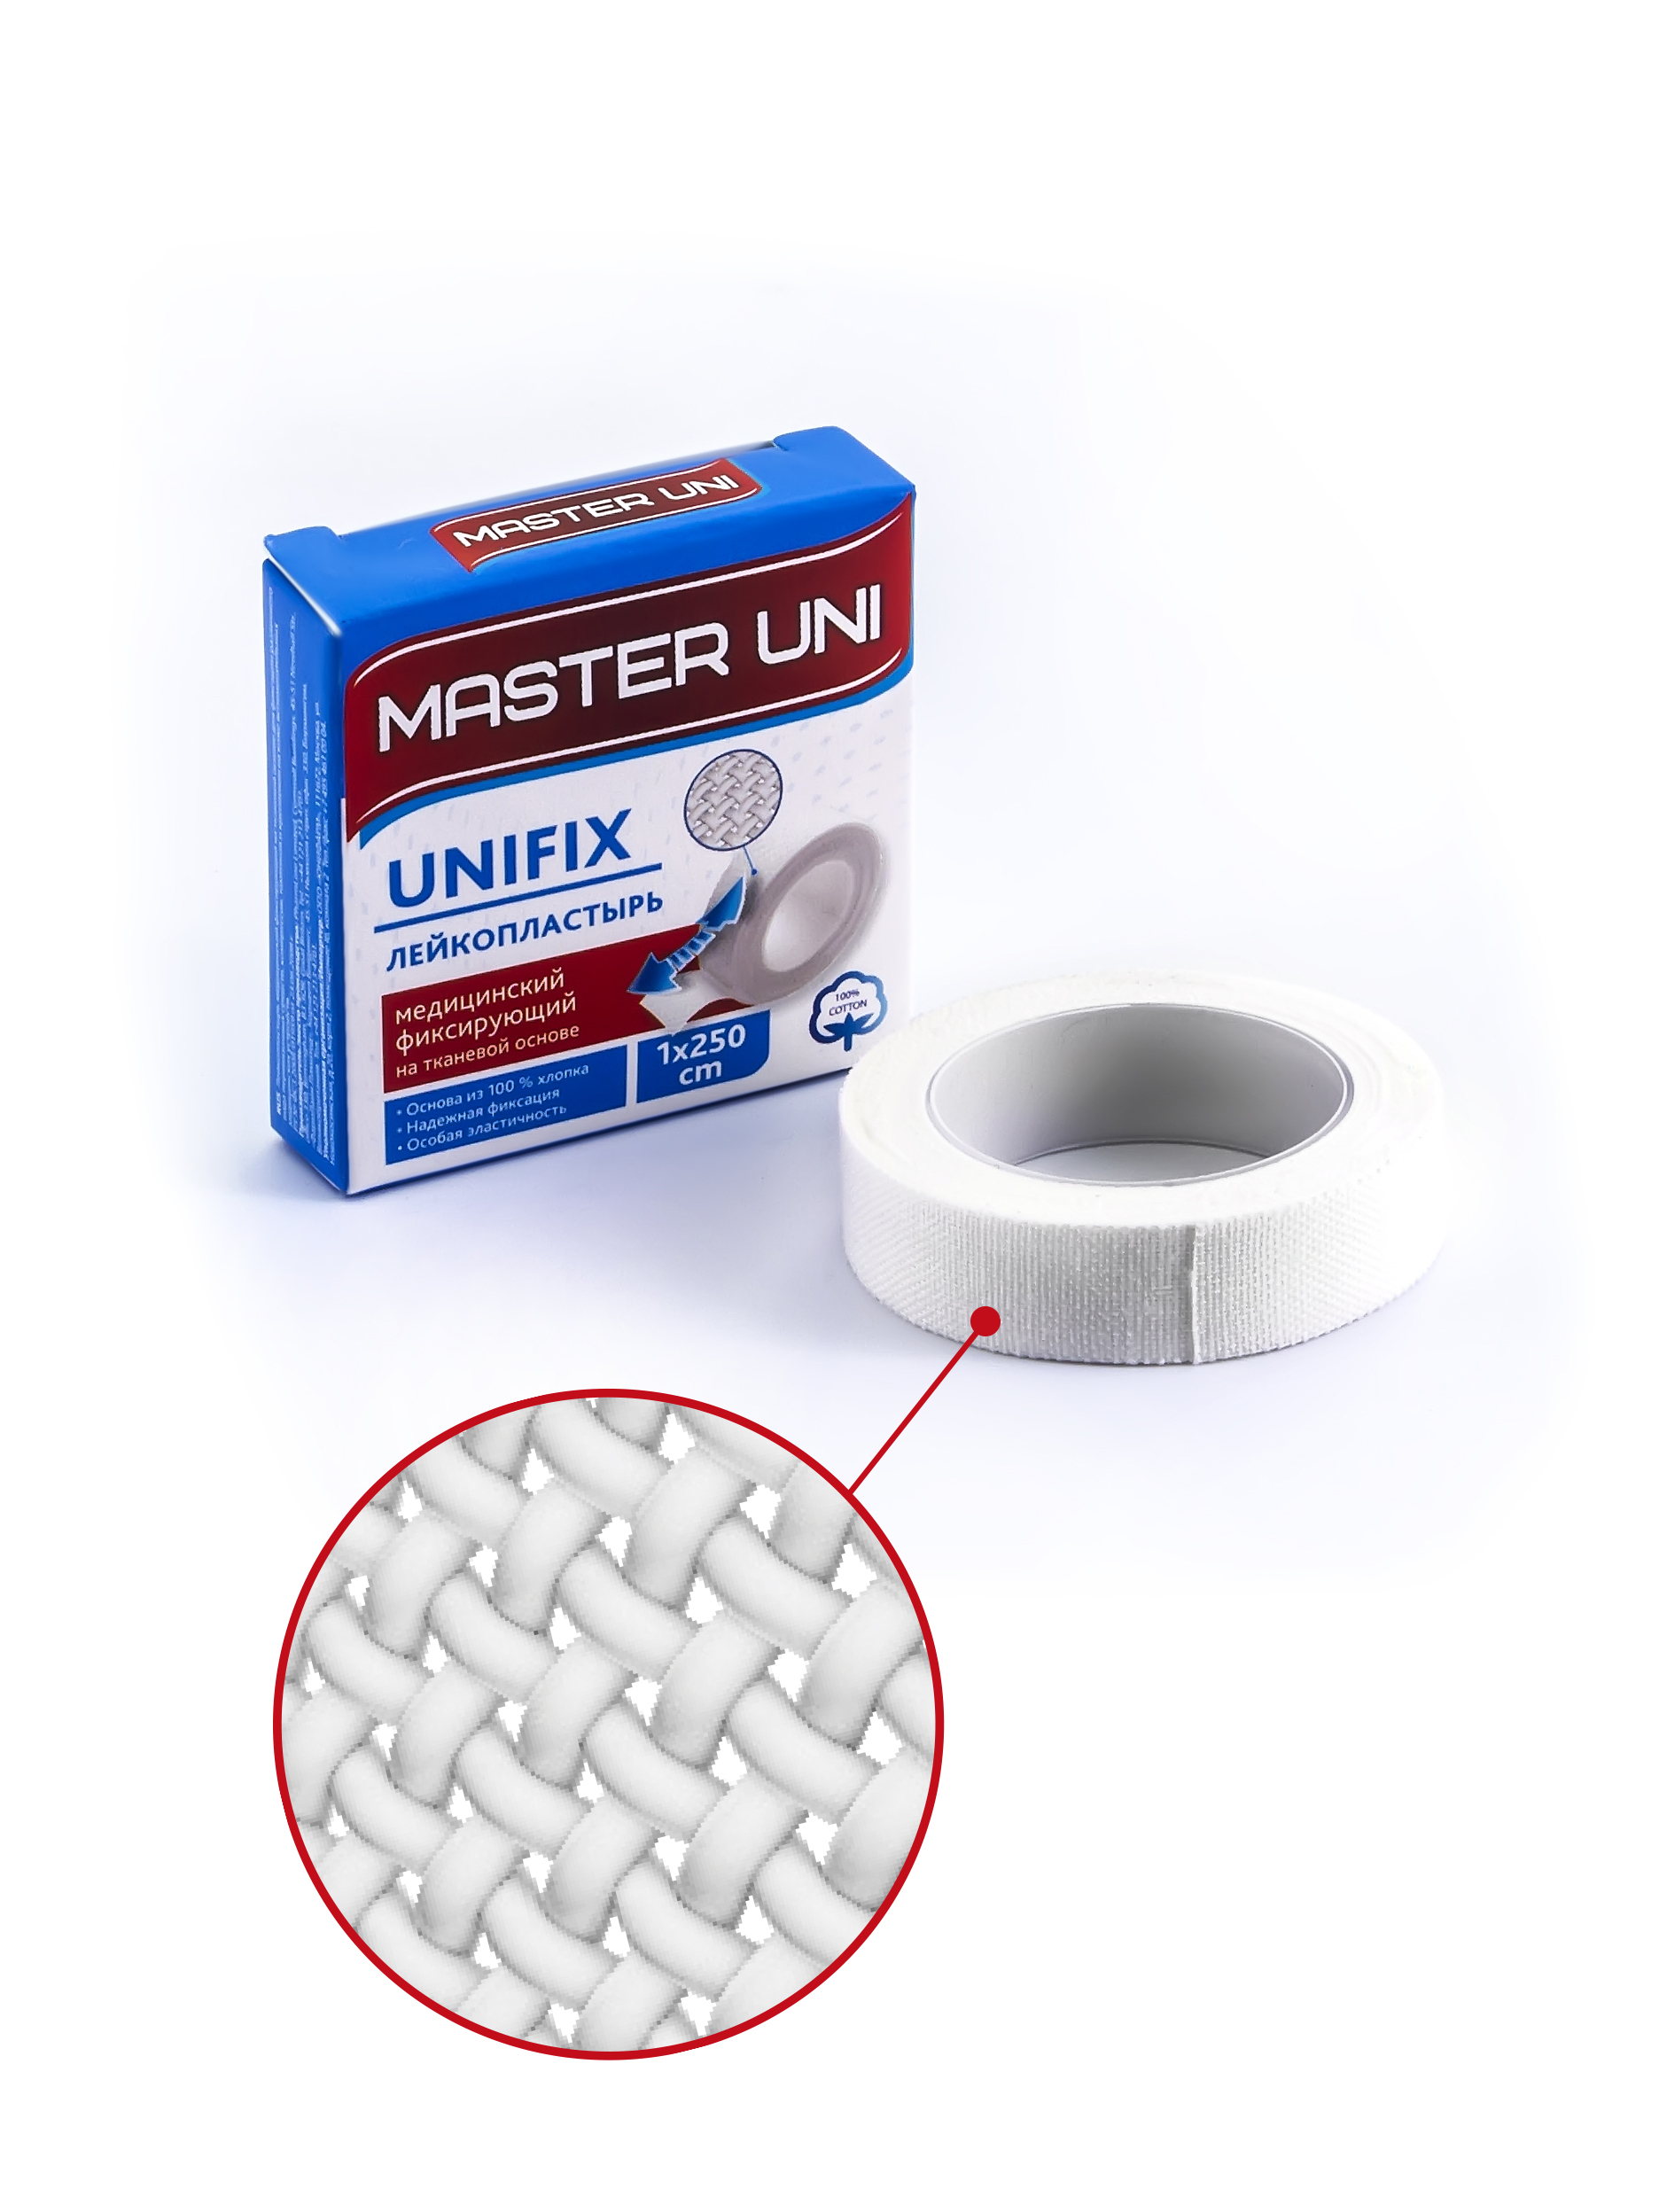 Купить UNIFIX Лейкопластырь 1 х 500 см на тканевой основе, Пластырь Master Uni Unifix фиксирующий на тканевой основе 1 х 500 см, белый